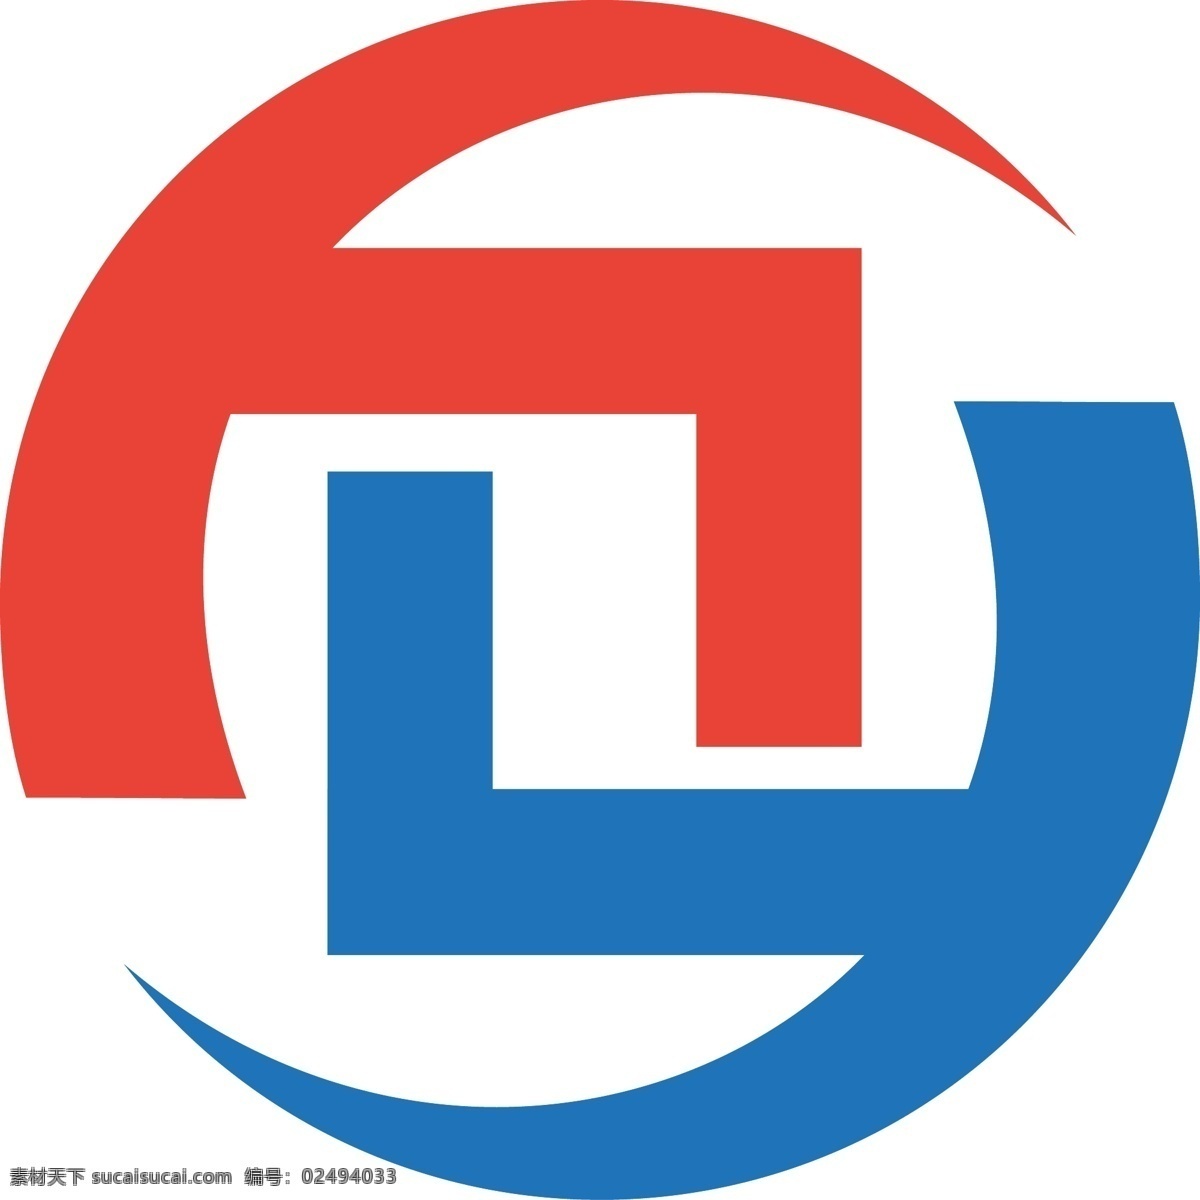 理财 logo 投资 标志设计 理财logo 投资标志设计 红蓝logo 字体设计 logo设计